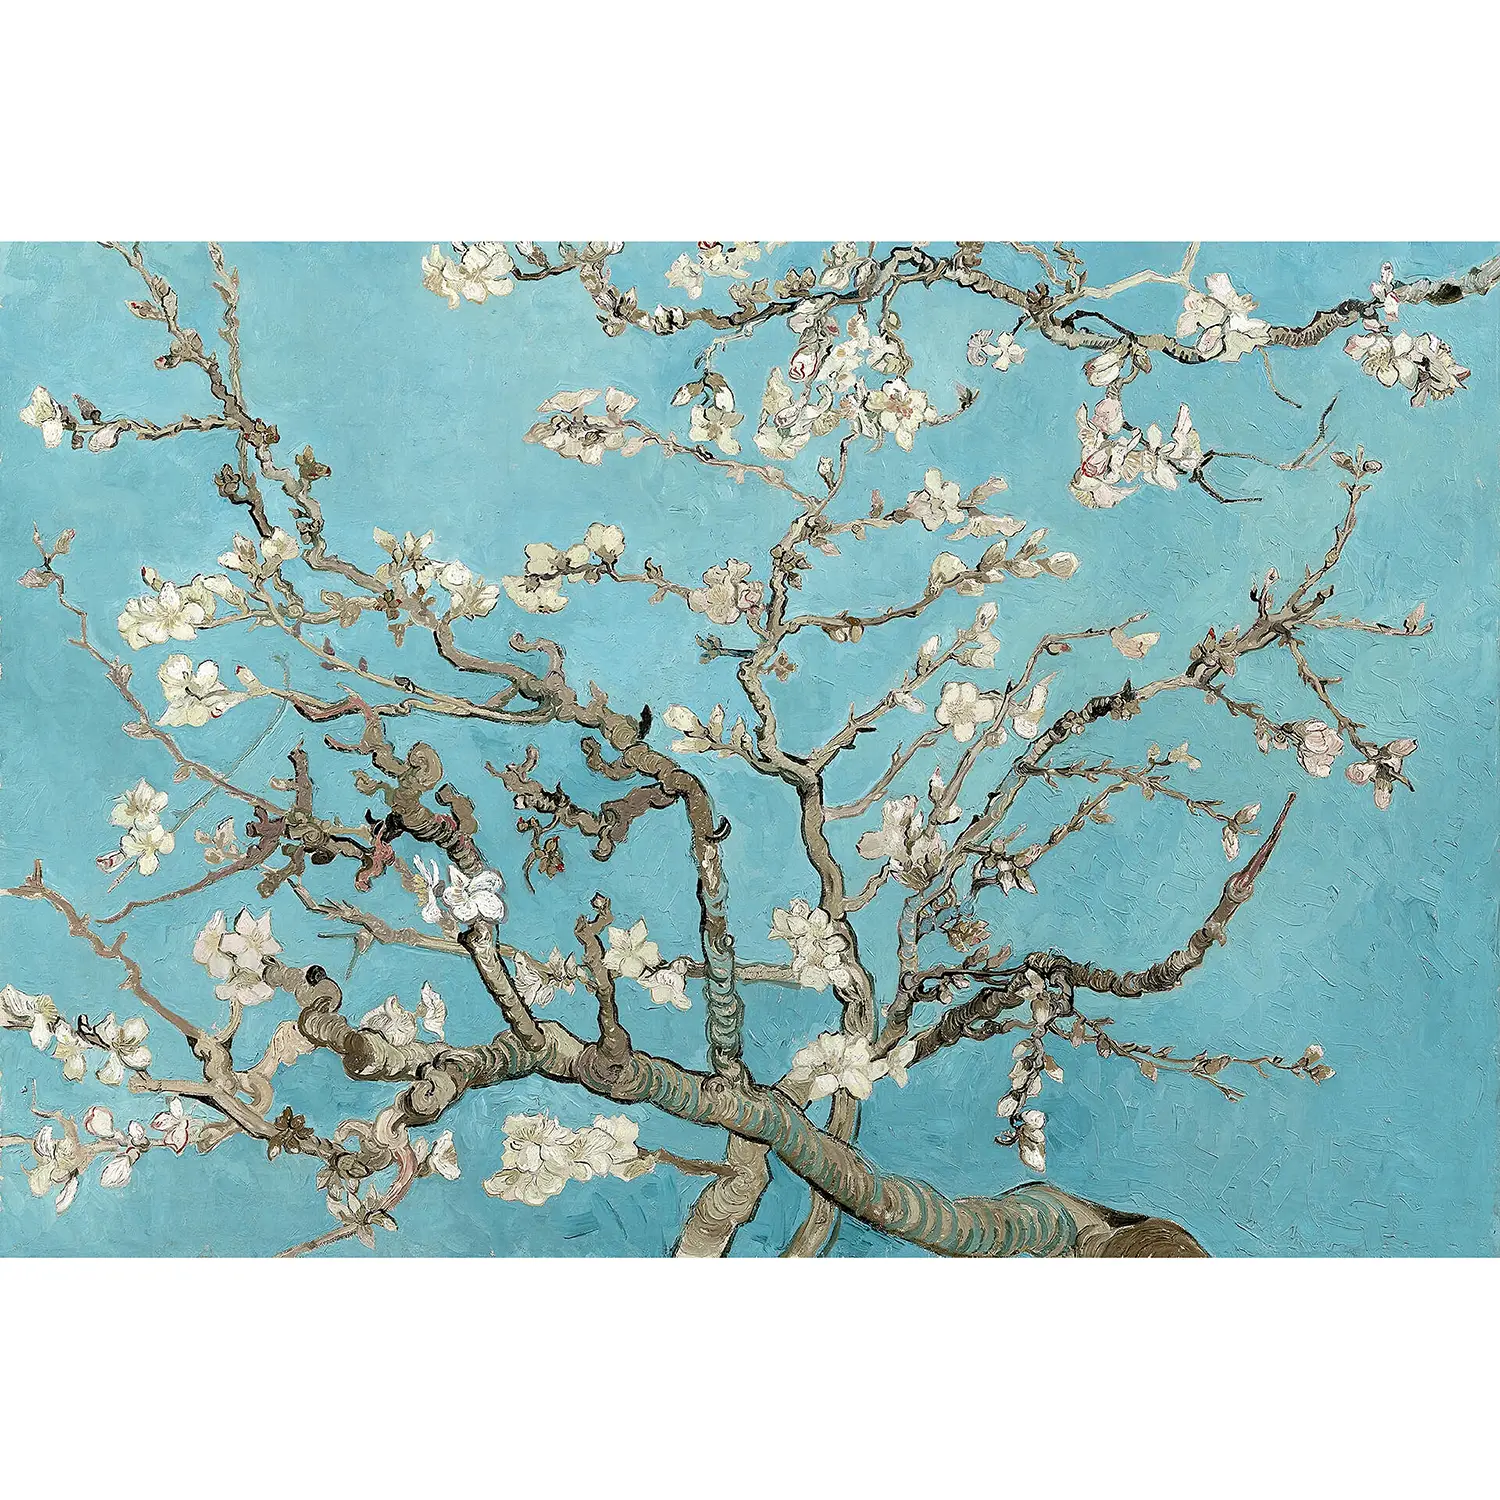 Fototapete van Gogh Almond Blossom | Tapeten